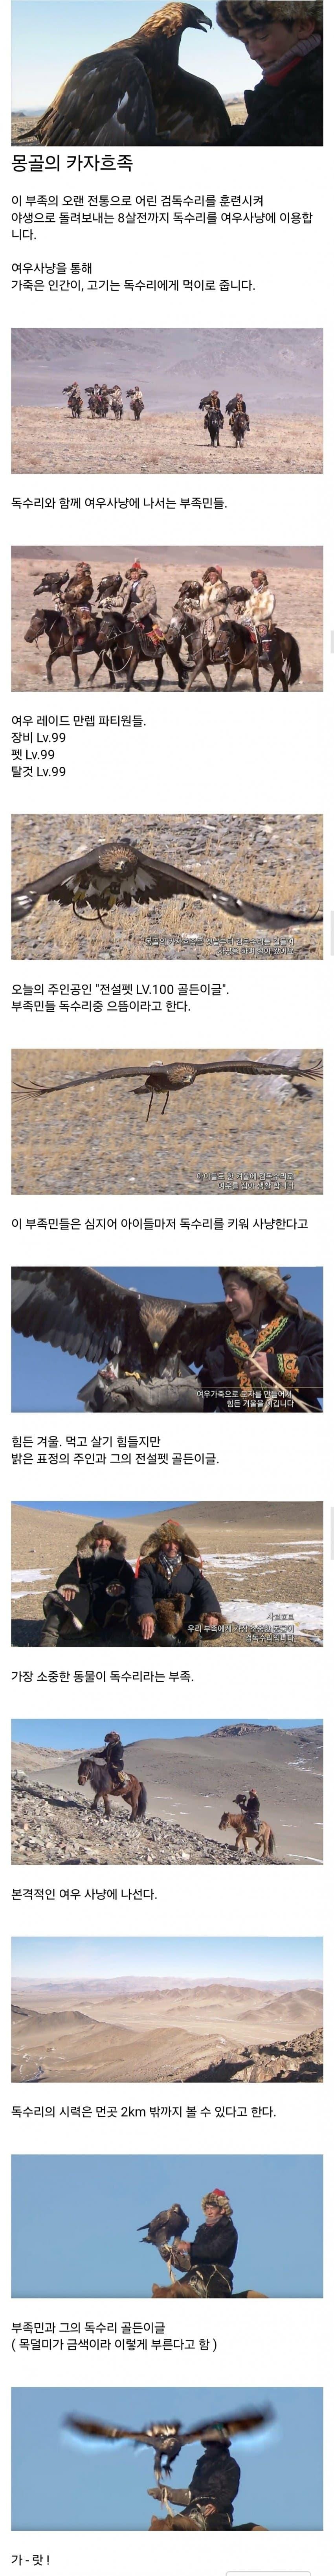 몽골 카자흐족 검독수리 사냥